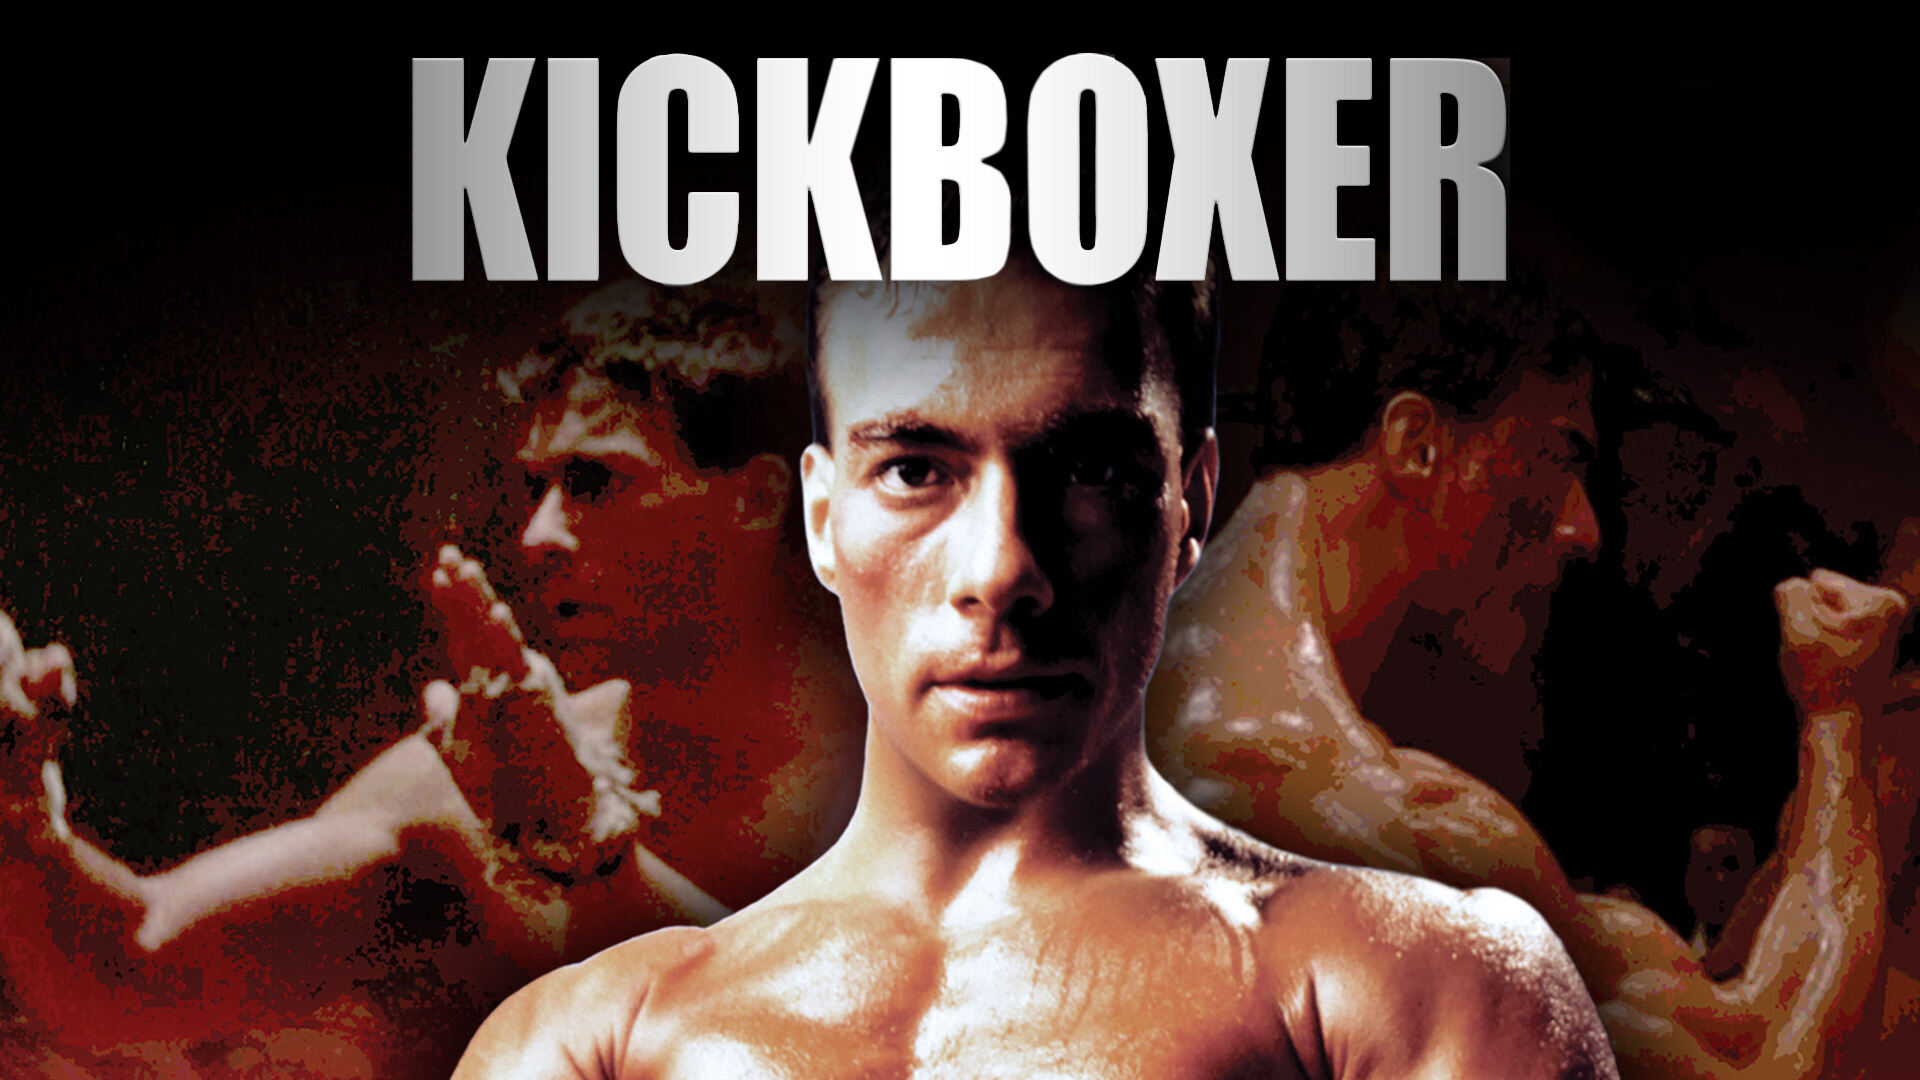 Watch kickboxer HD wallpapers | Pxfuel